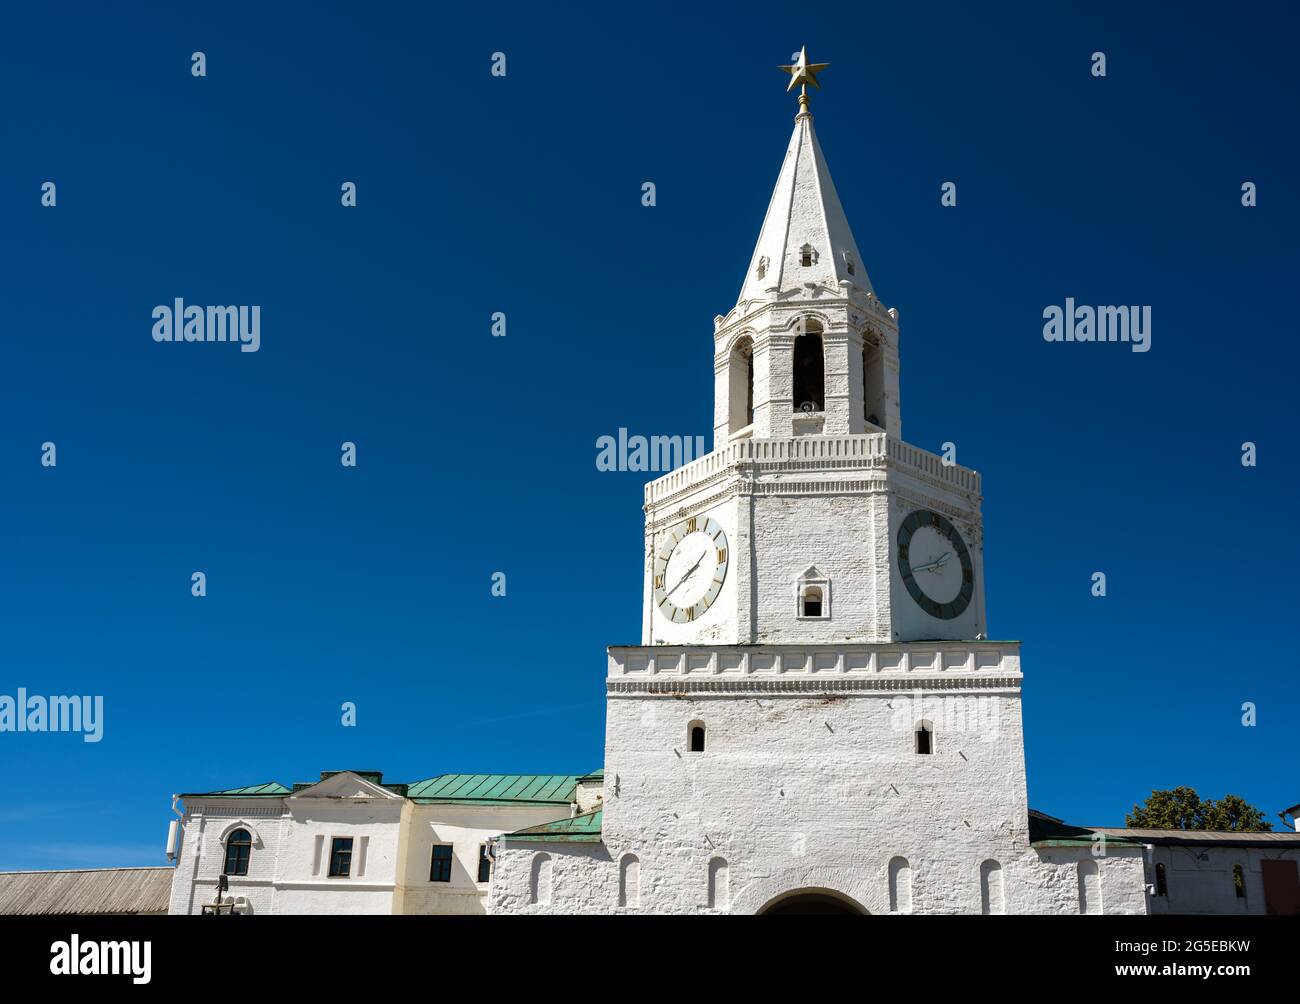 Cremlino di Kazan su sfondo blu, Tatarstan, Russia. Spasskaya Tower, ingresso principale della fortezza bianca. E' un punto di riferimento della vecchia Kazan. Arco storico Foto Stock